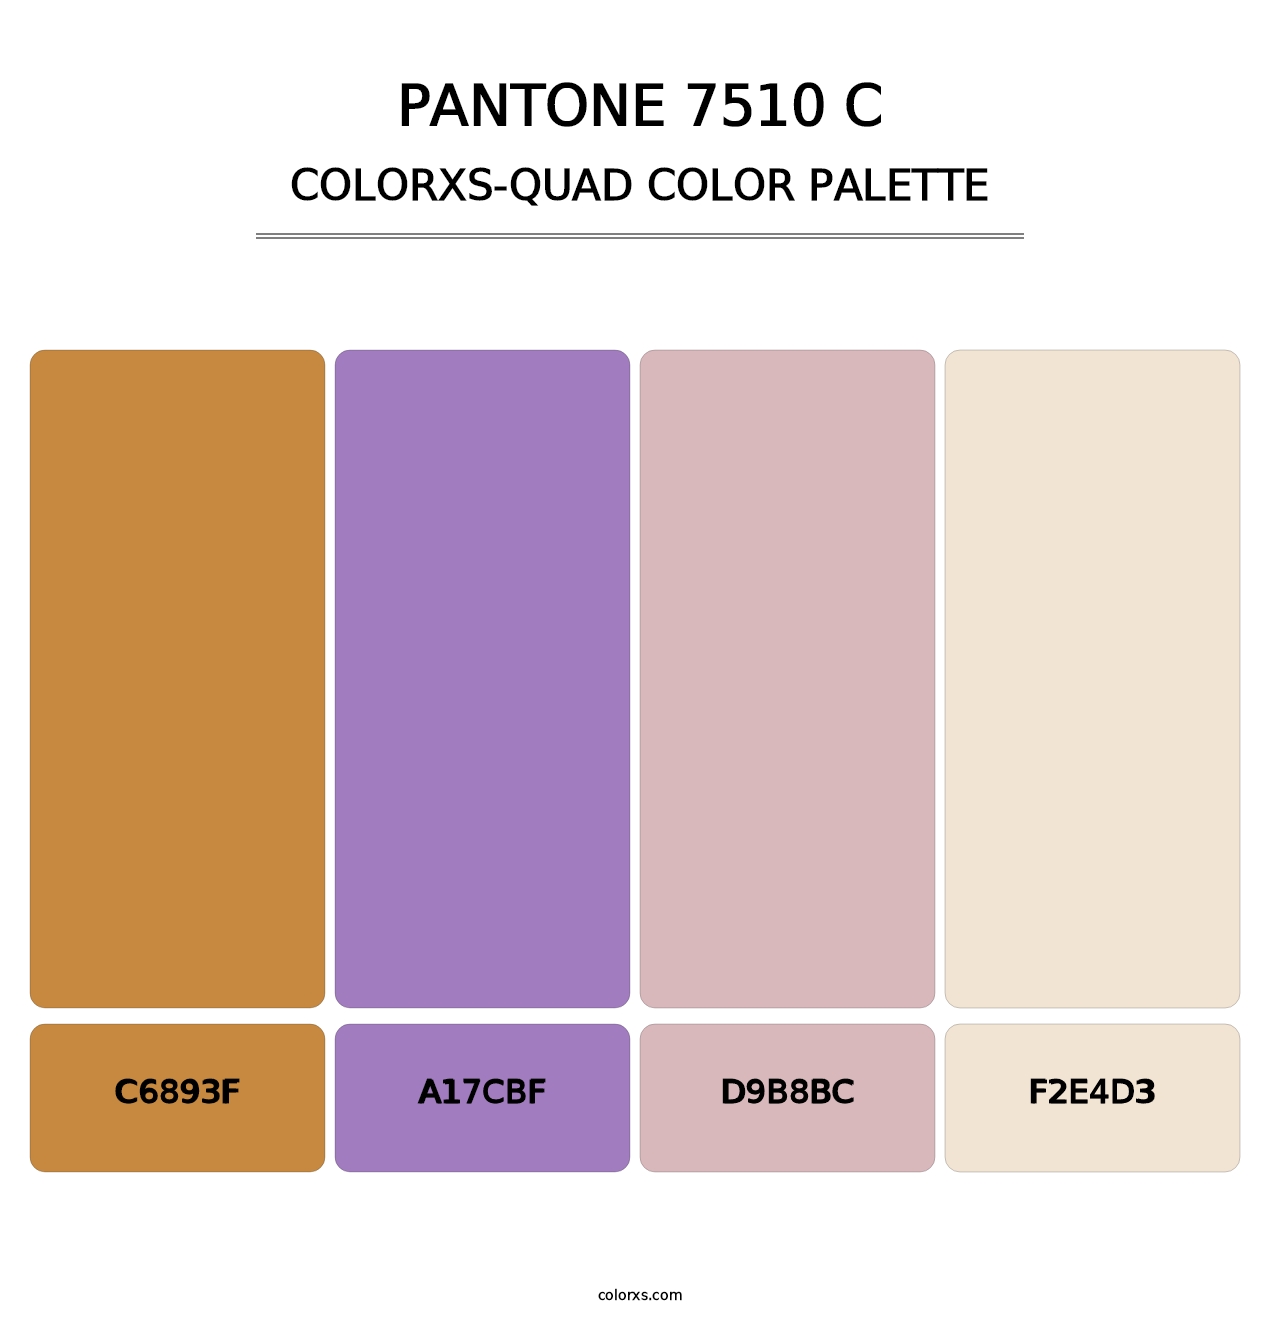 PANTONE 7510 C - Colorxs Quad Palette